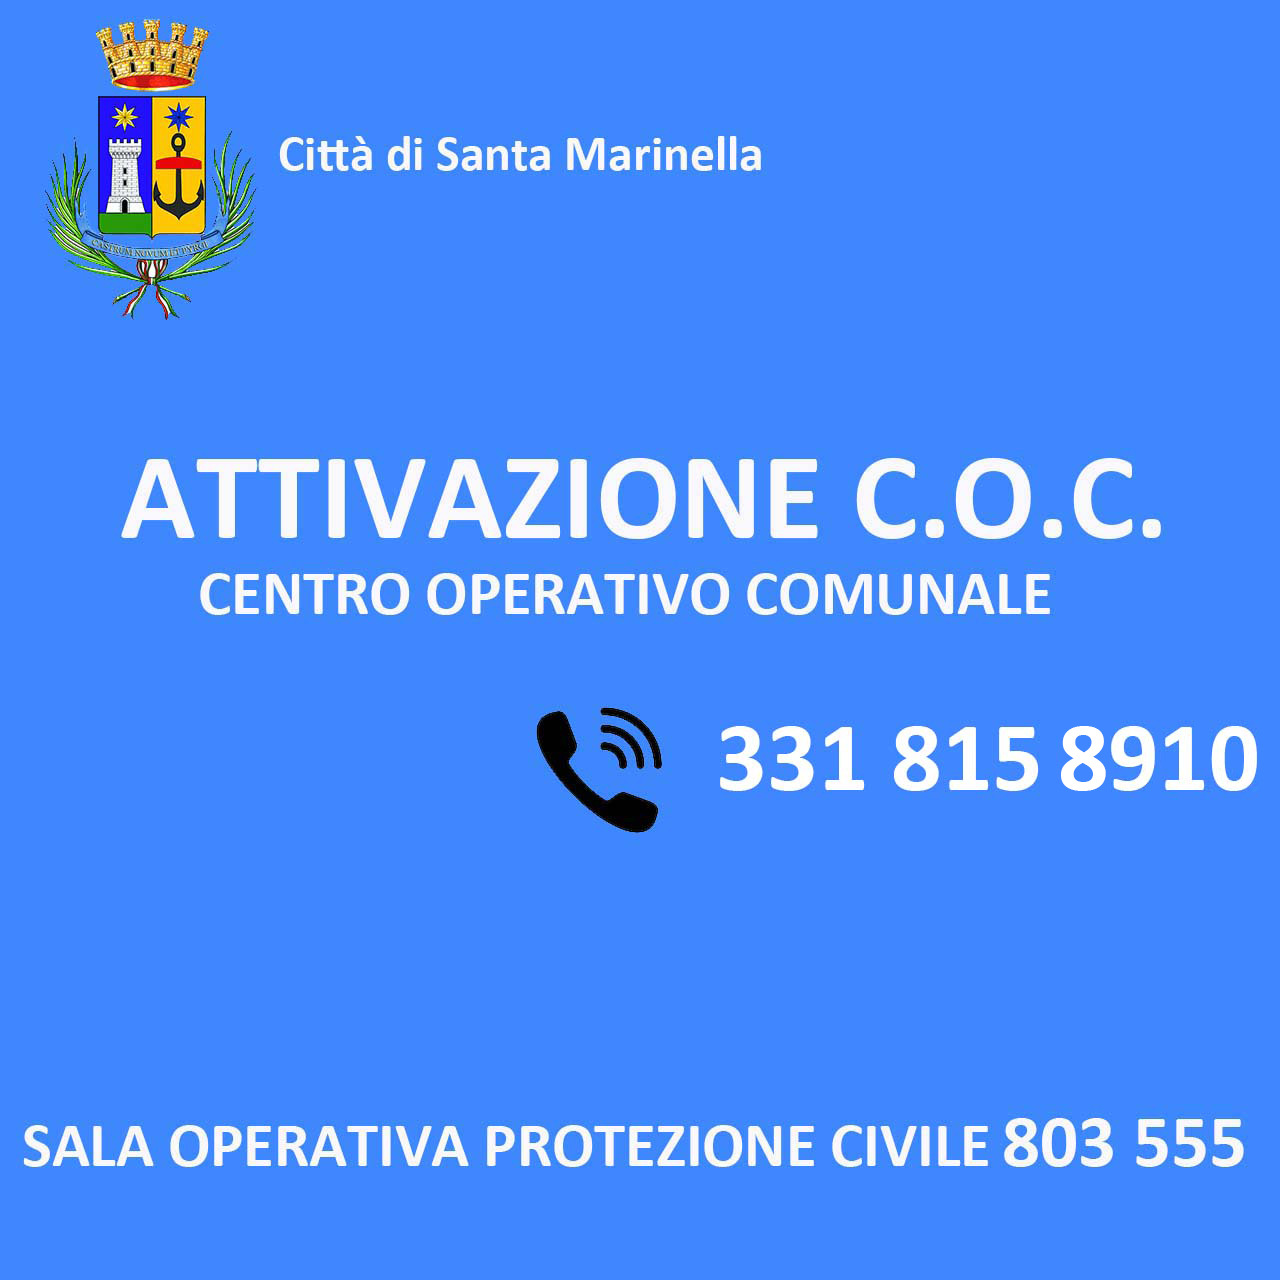 ATTIVAZIONE C.O.C. - CENTRO OPERATIVO COMUNALE